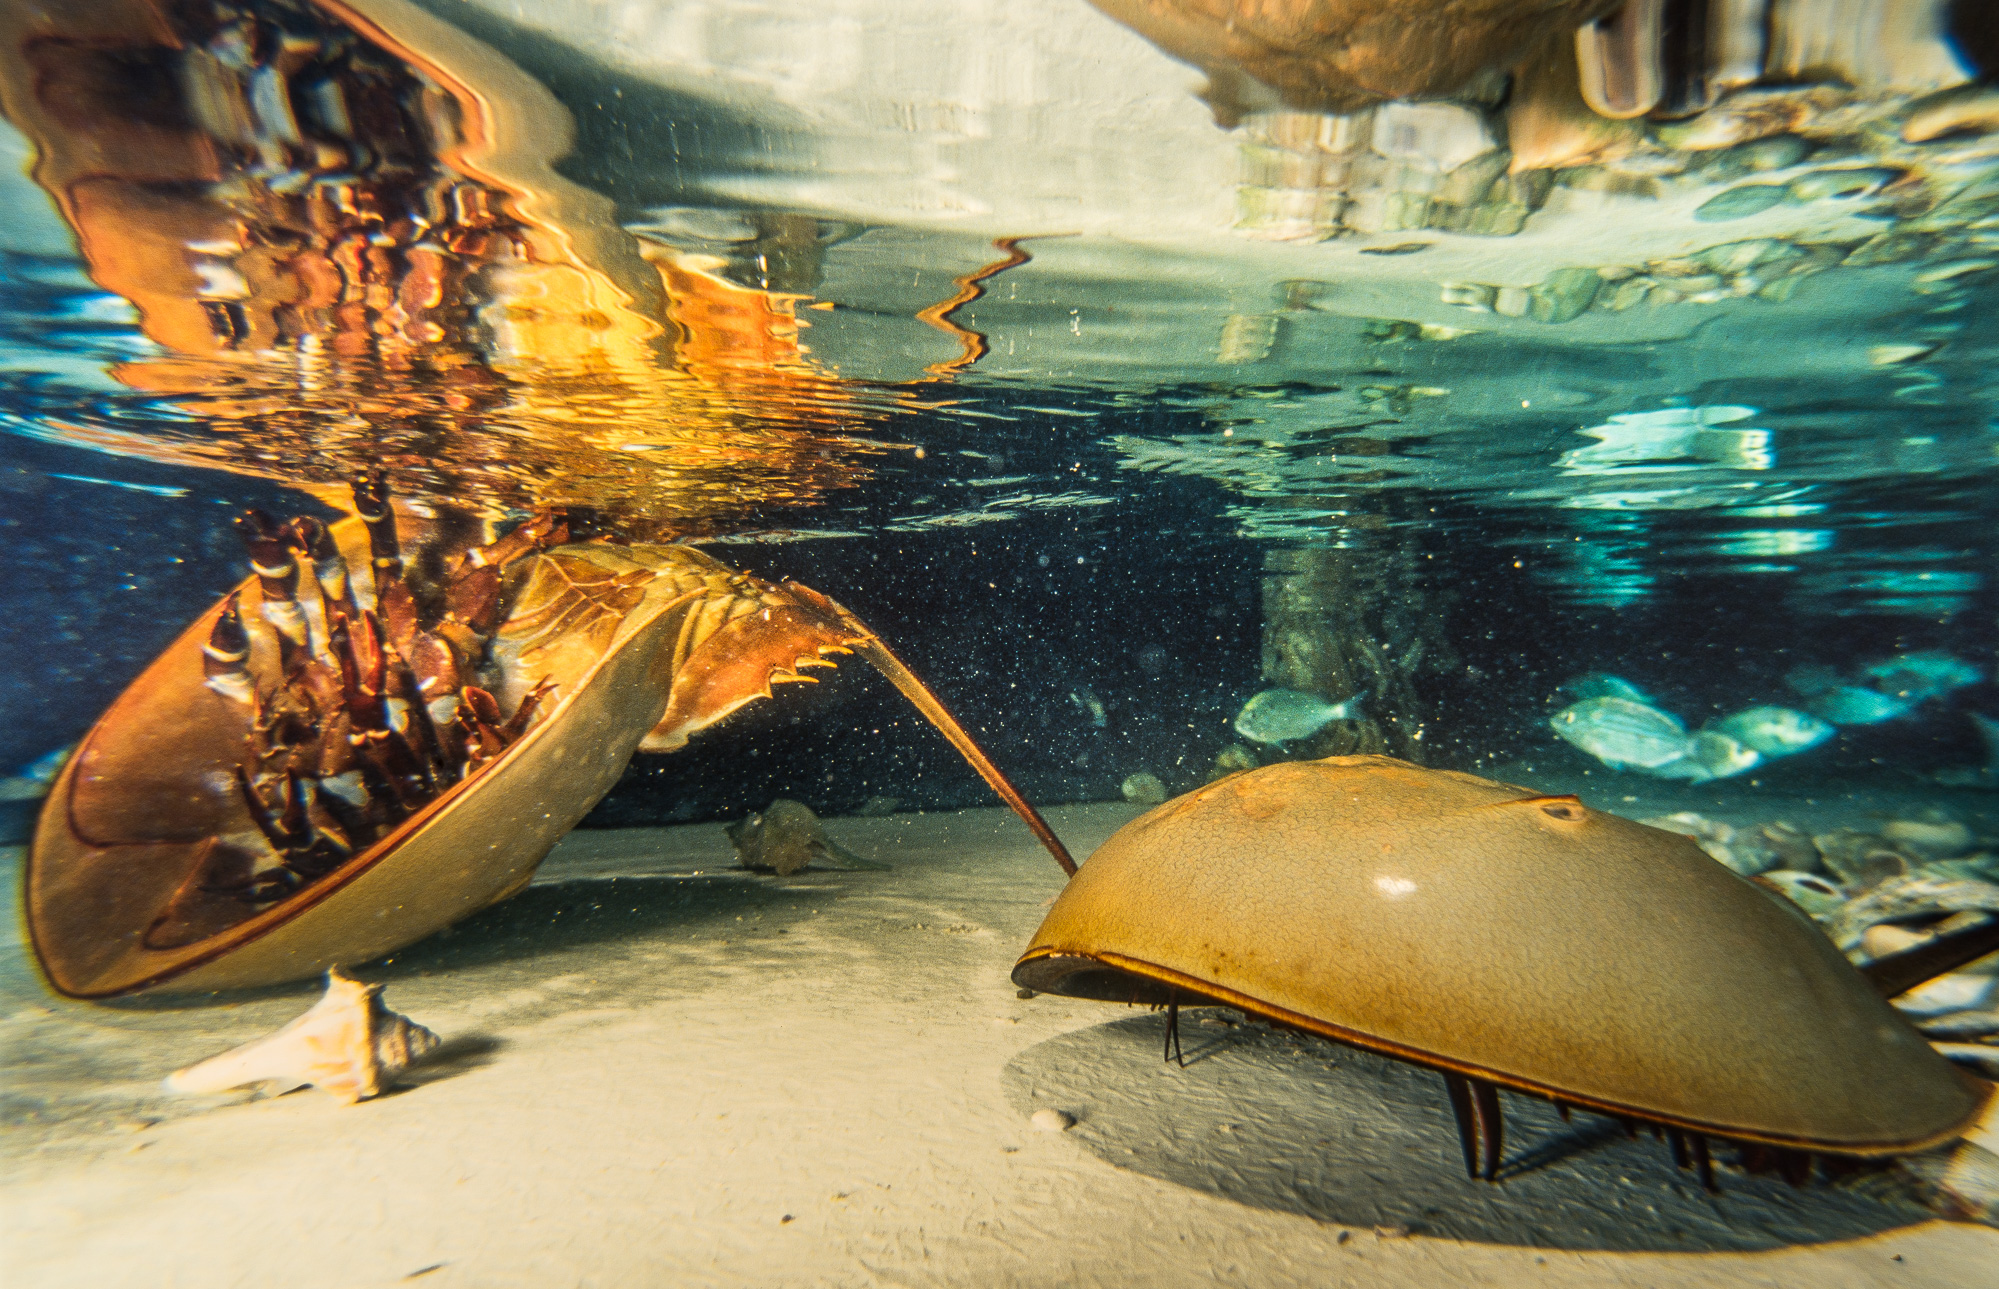 Manteo. Horse shoes crab (linule), présenté dans l'aquarium municipal. Cet animal aquatique antédiluvien fait penser à un crabe matiné de scorpion.